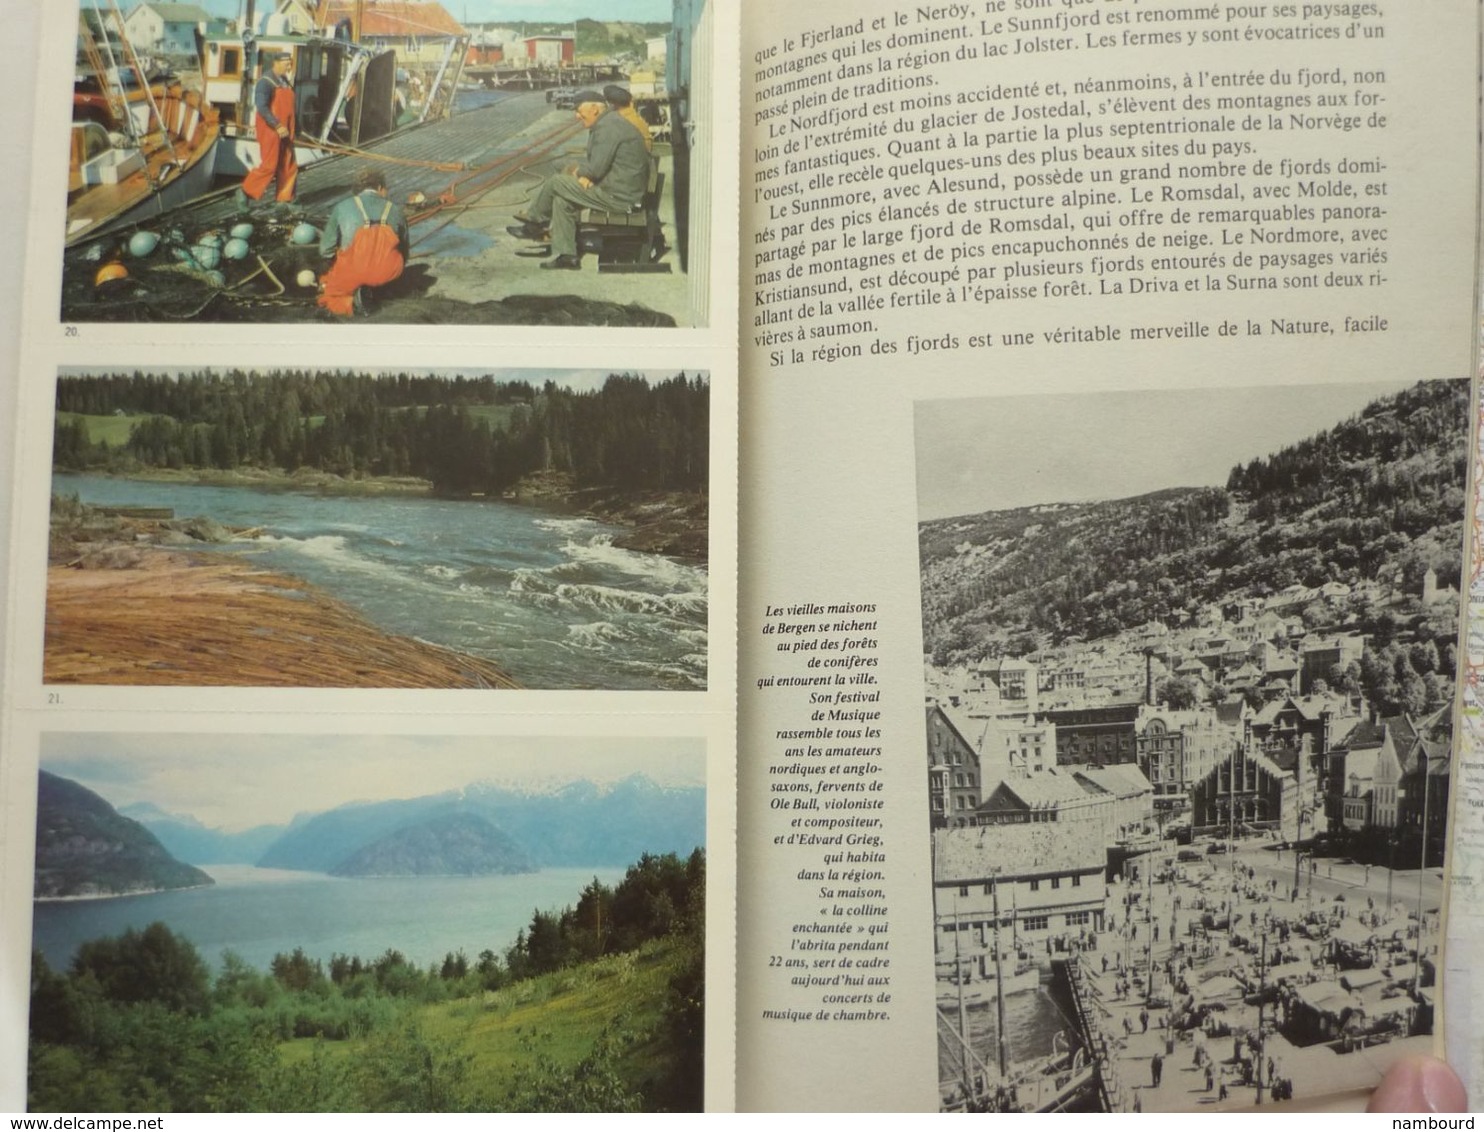 Tour du Monde N°223 Le Royaume de Norvège - L'Ordre de Malte - Des forêts et des mers Avril 1978